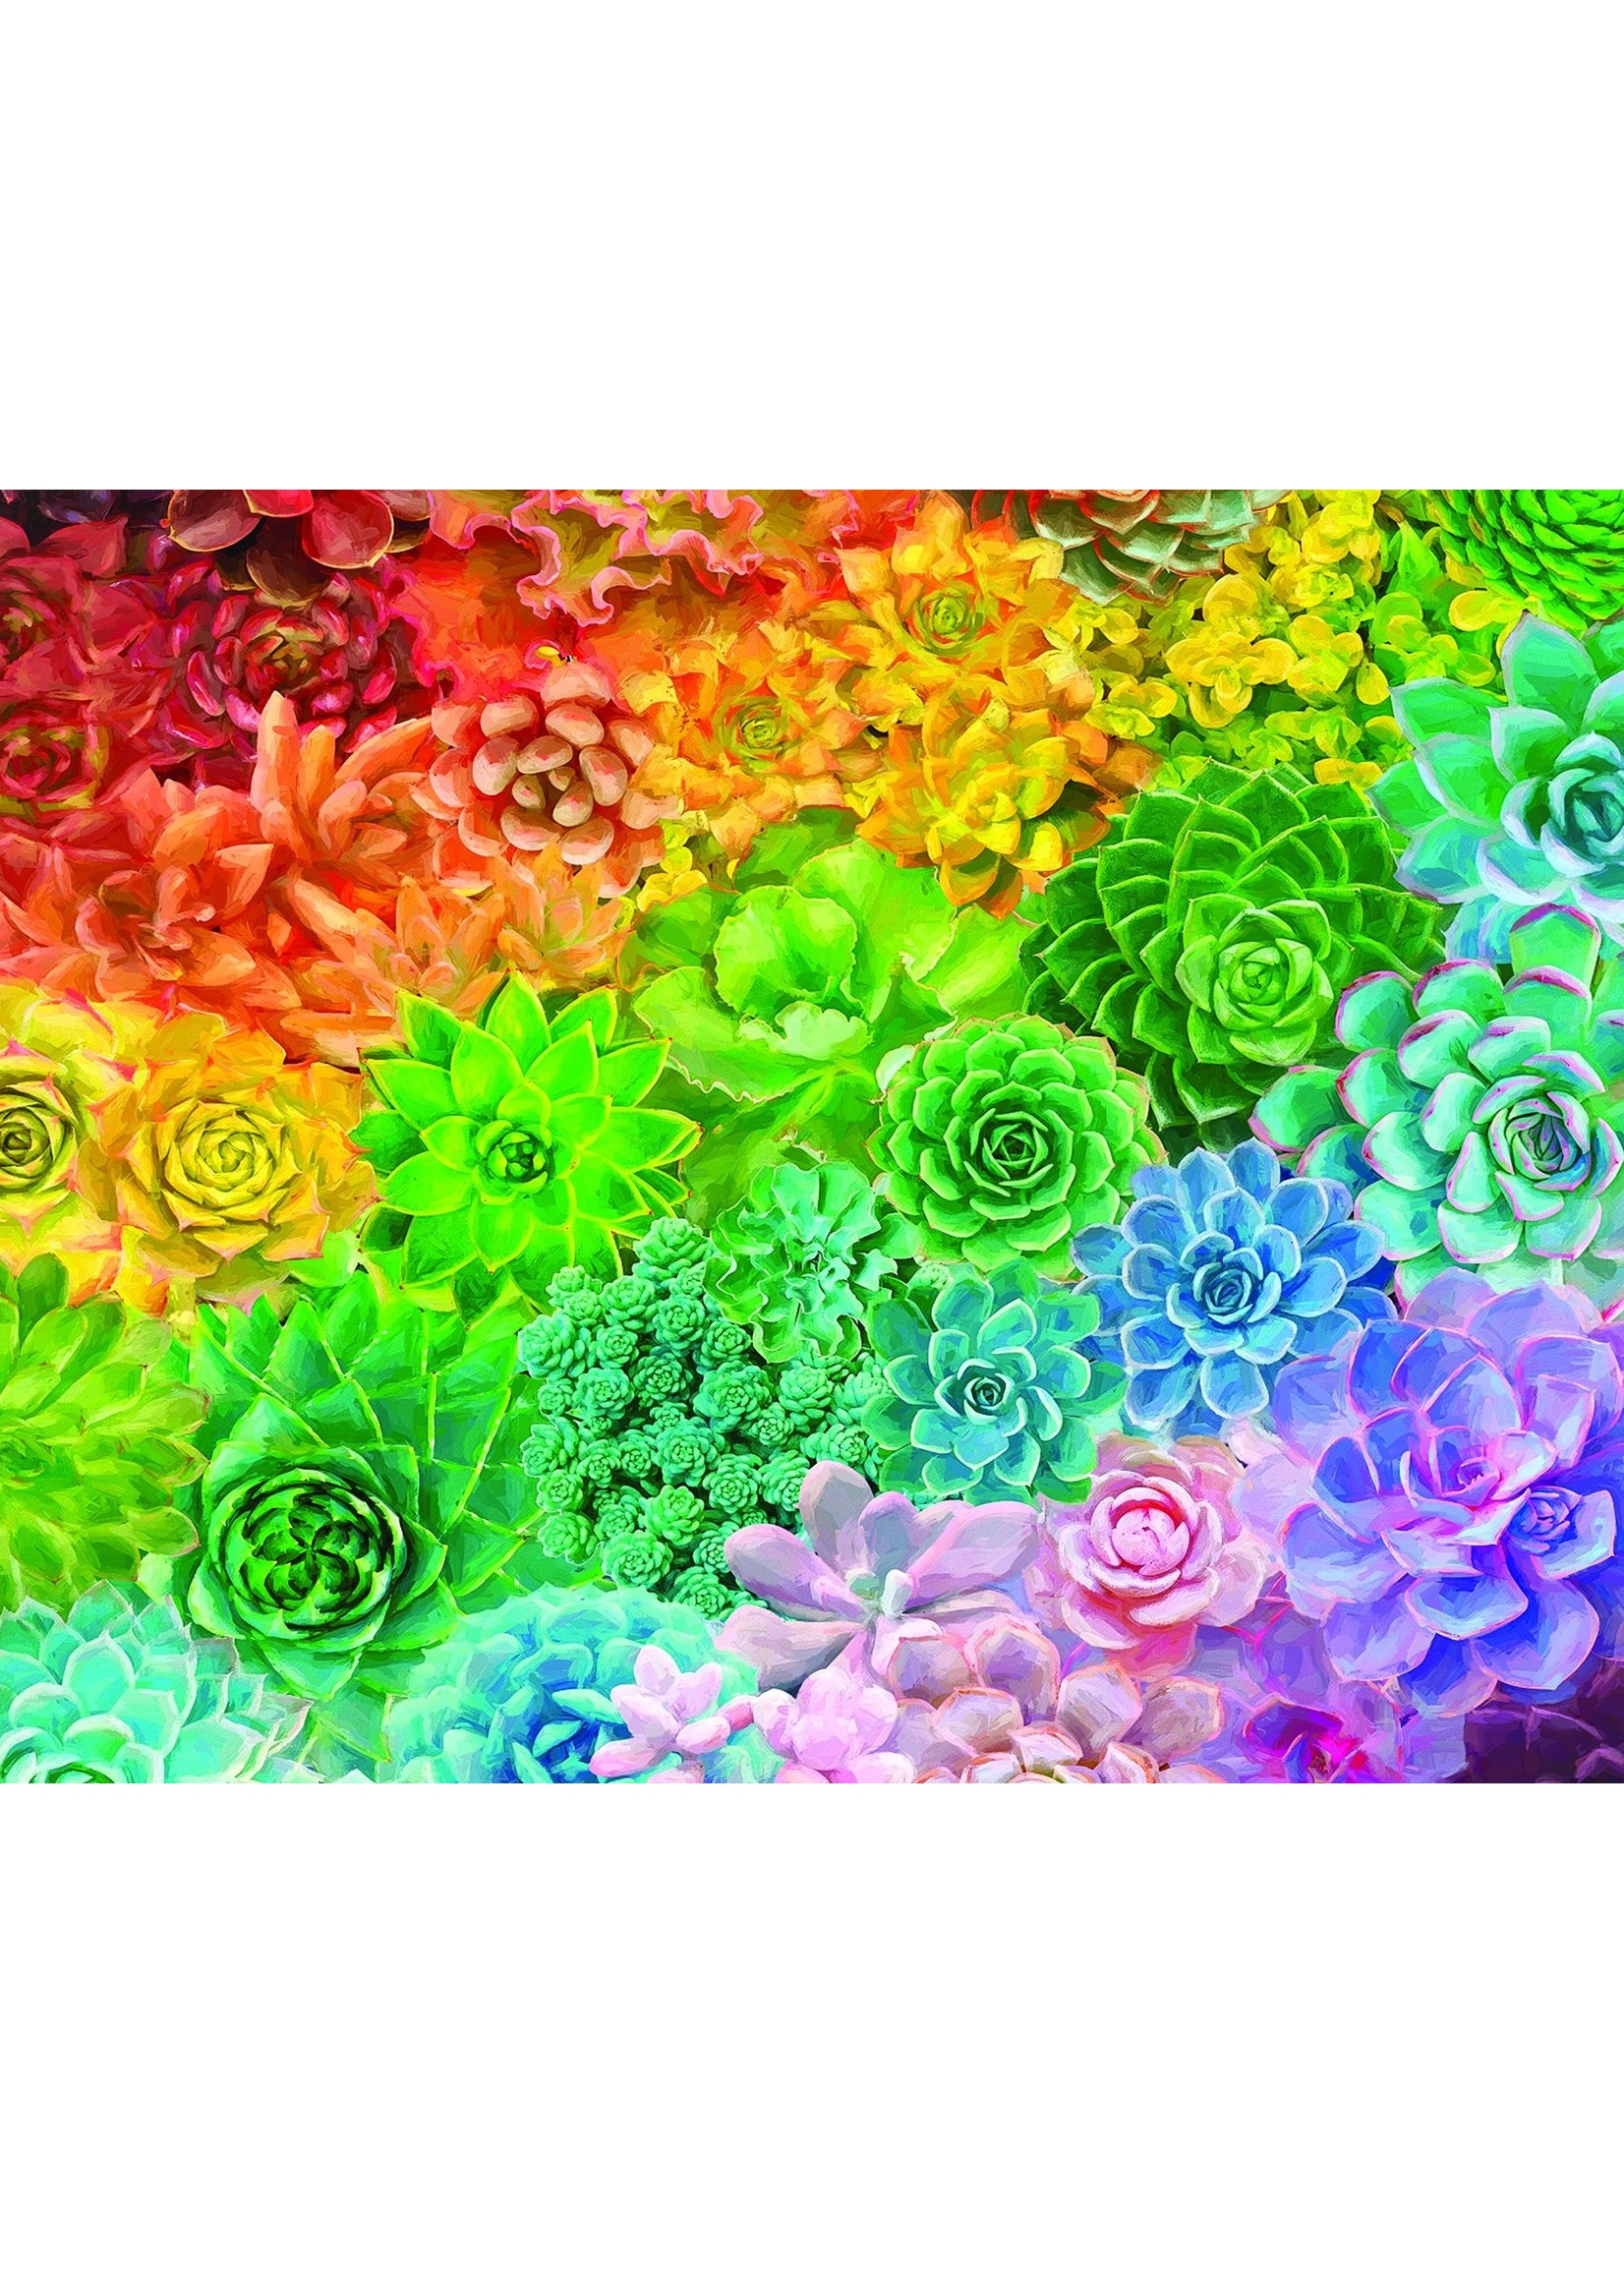 White Mountain Puzzle "Succulent Rainbow" 1000 Piece Puzzle